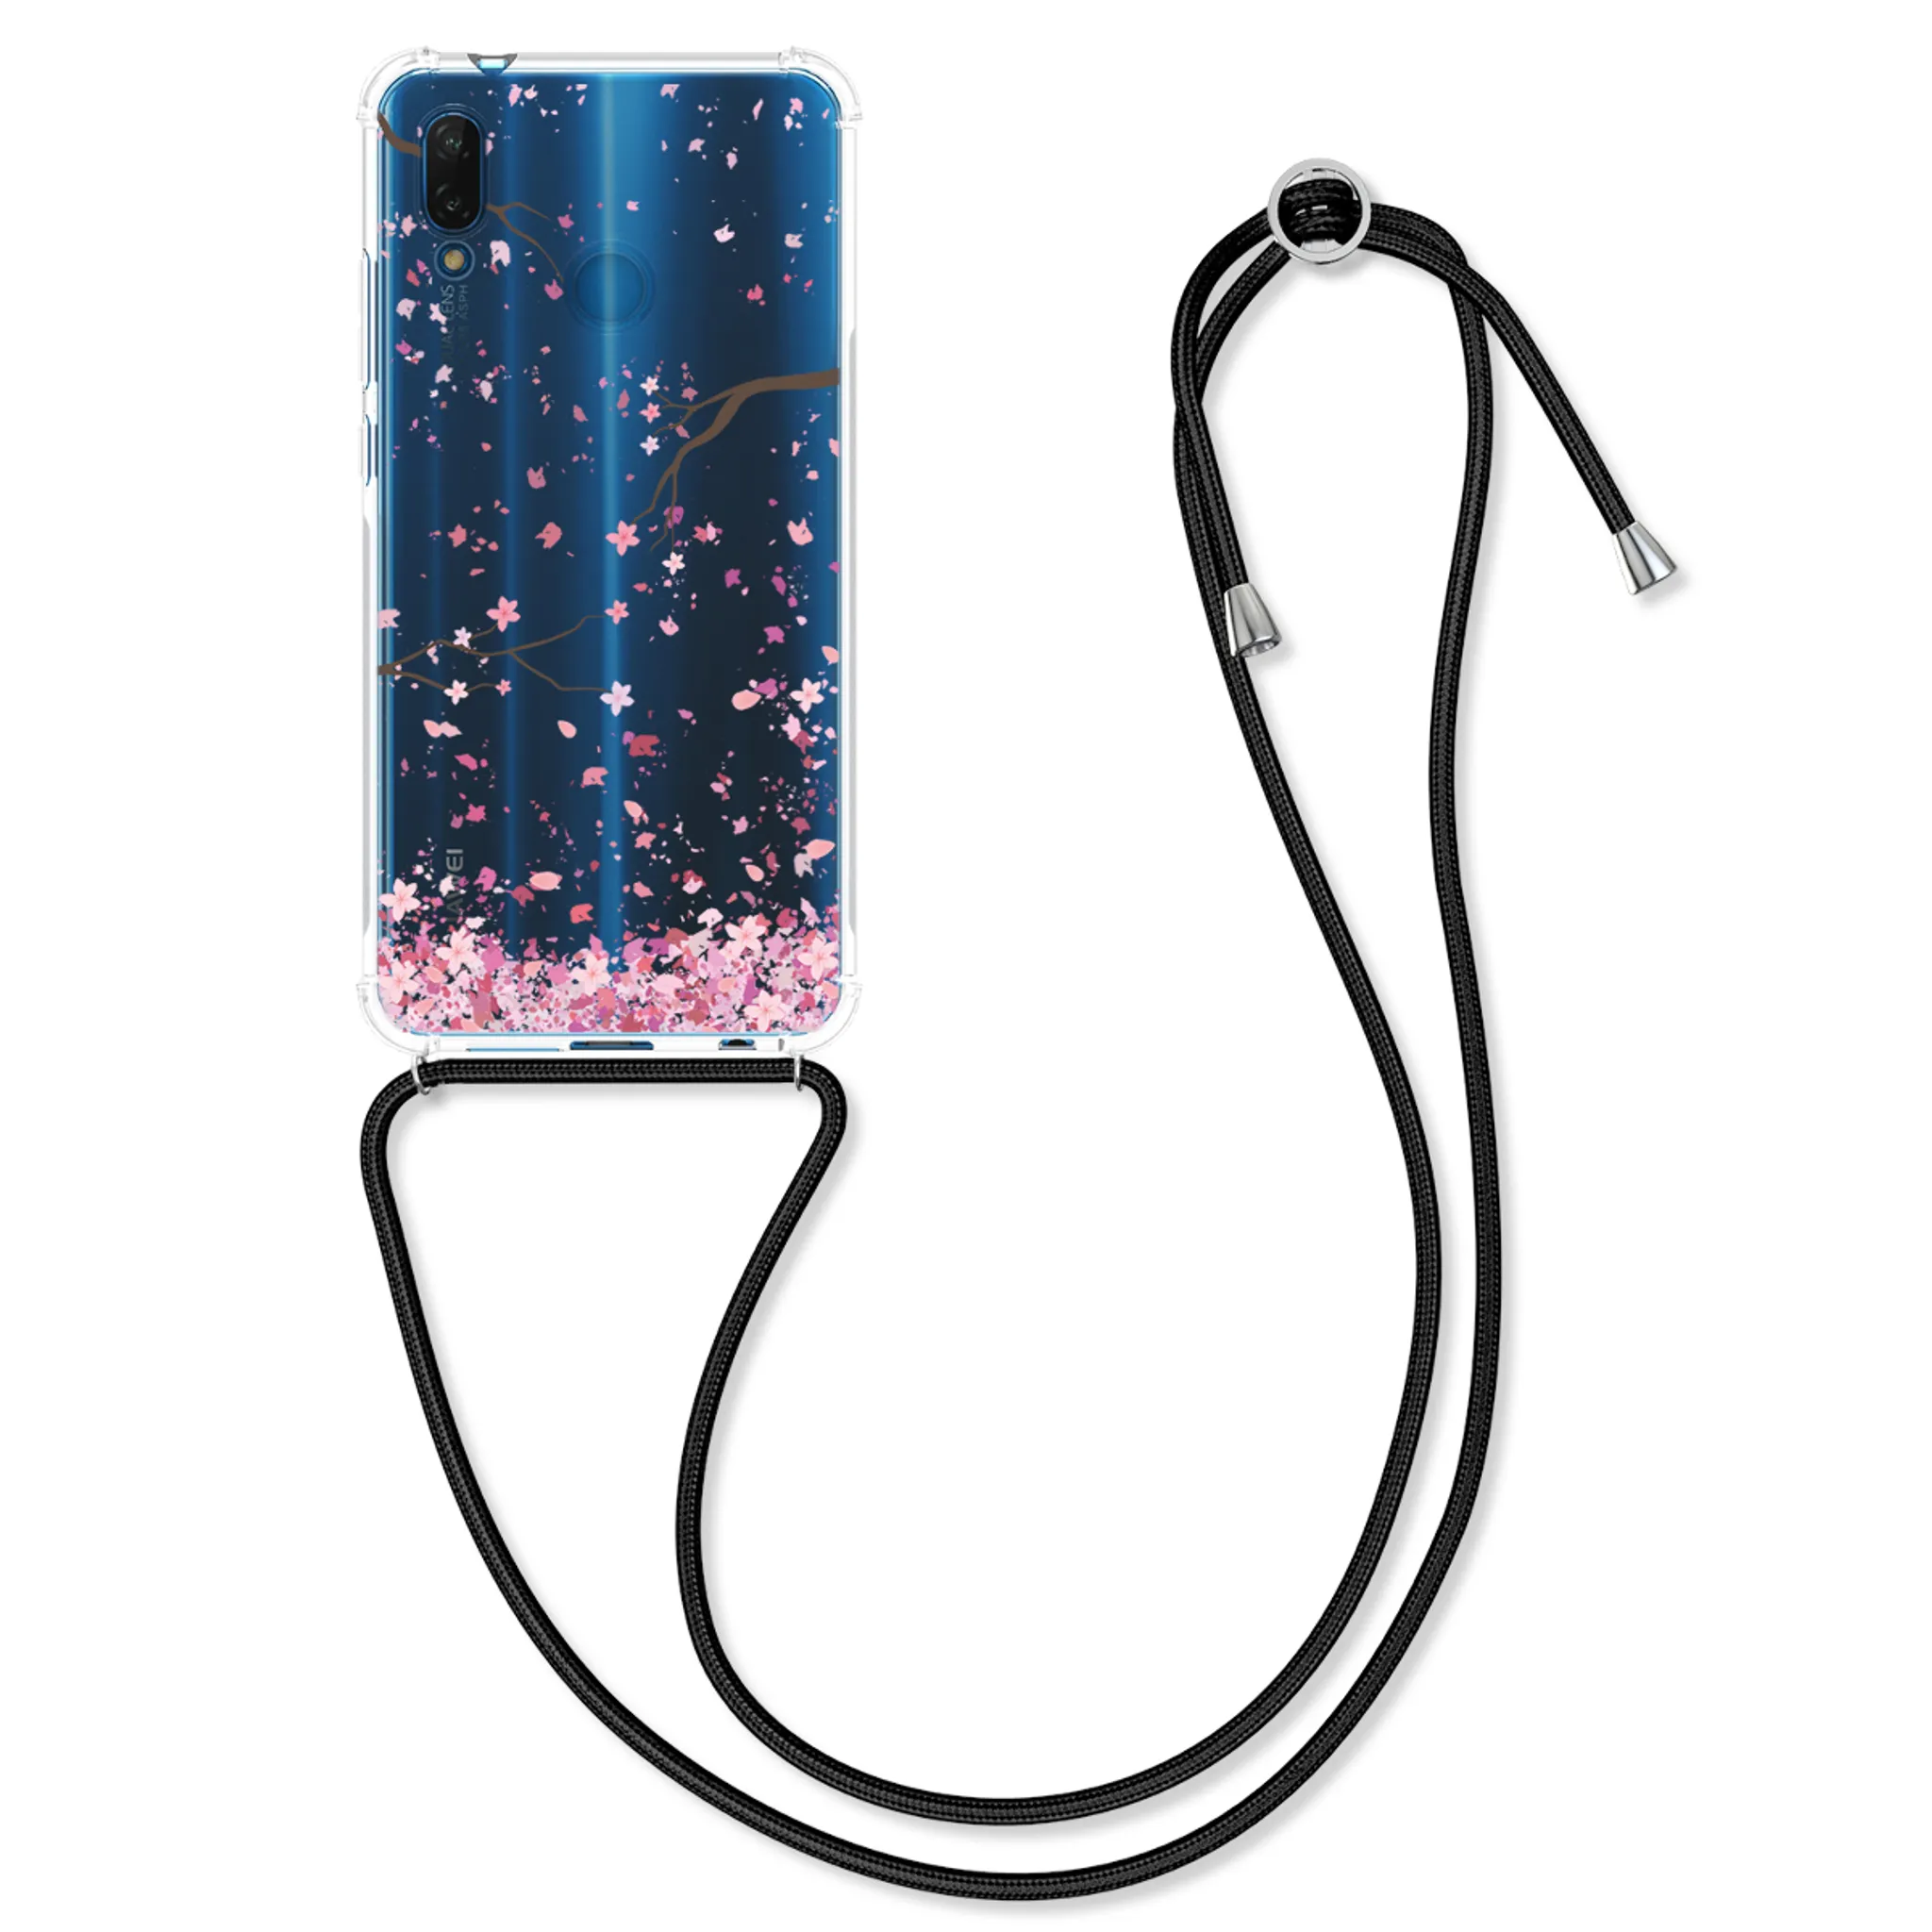 Finoo Handyhülle kompatibel für Huawei P20 Lite Meerjungfrau Hülle mit Motiv und Optimalen Schutz TPU Silikon Tasche Case Cover Schutzhülle 